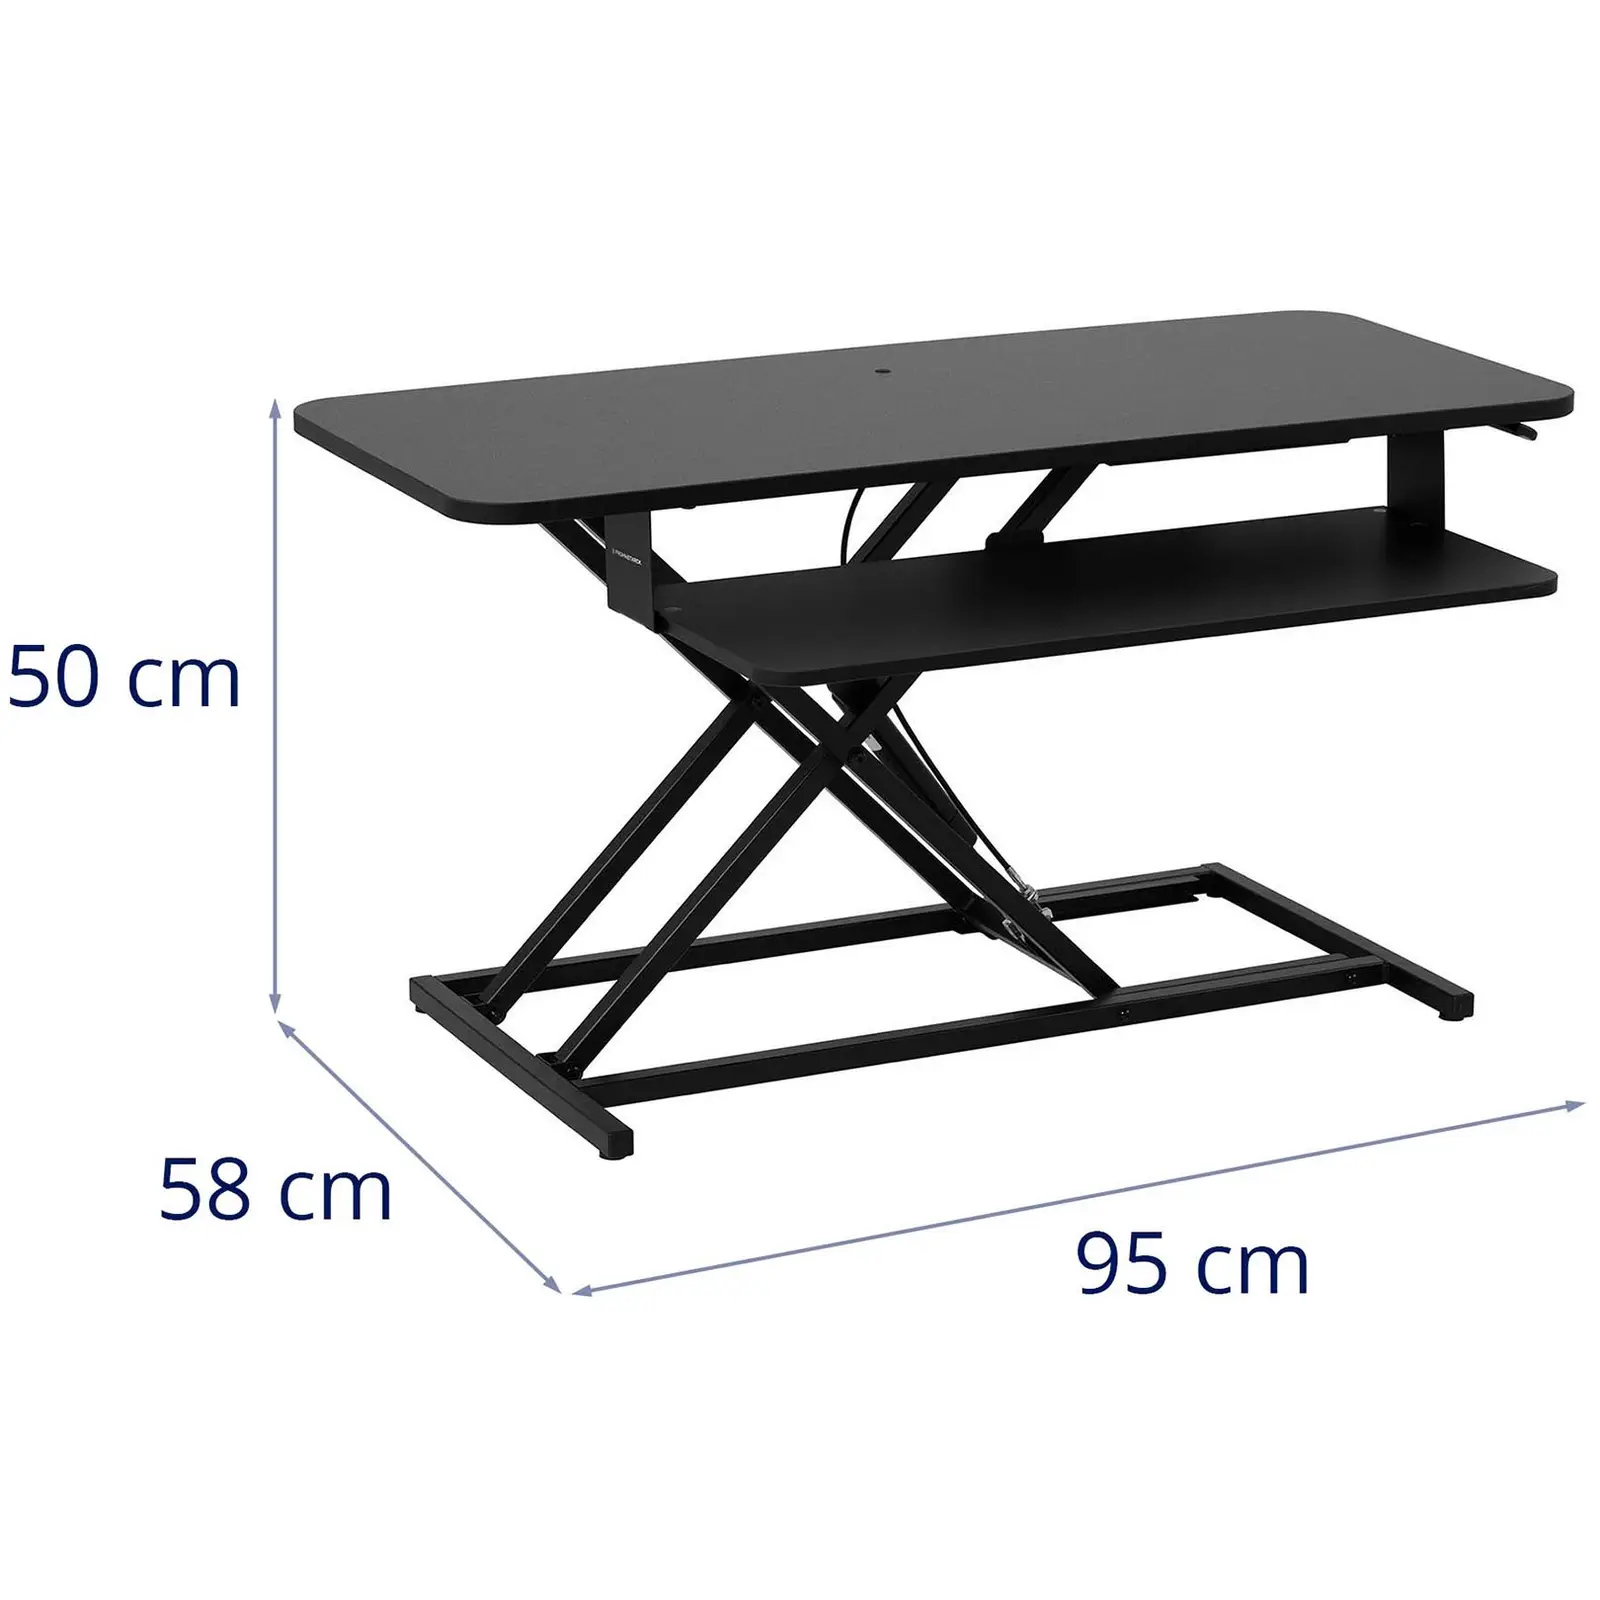 Nadstavec na písací stôl - práca v sede/stoji - výškovo nastaviteľný v rozmedzí 115 – 500 mm